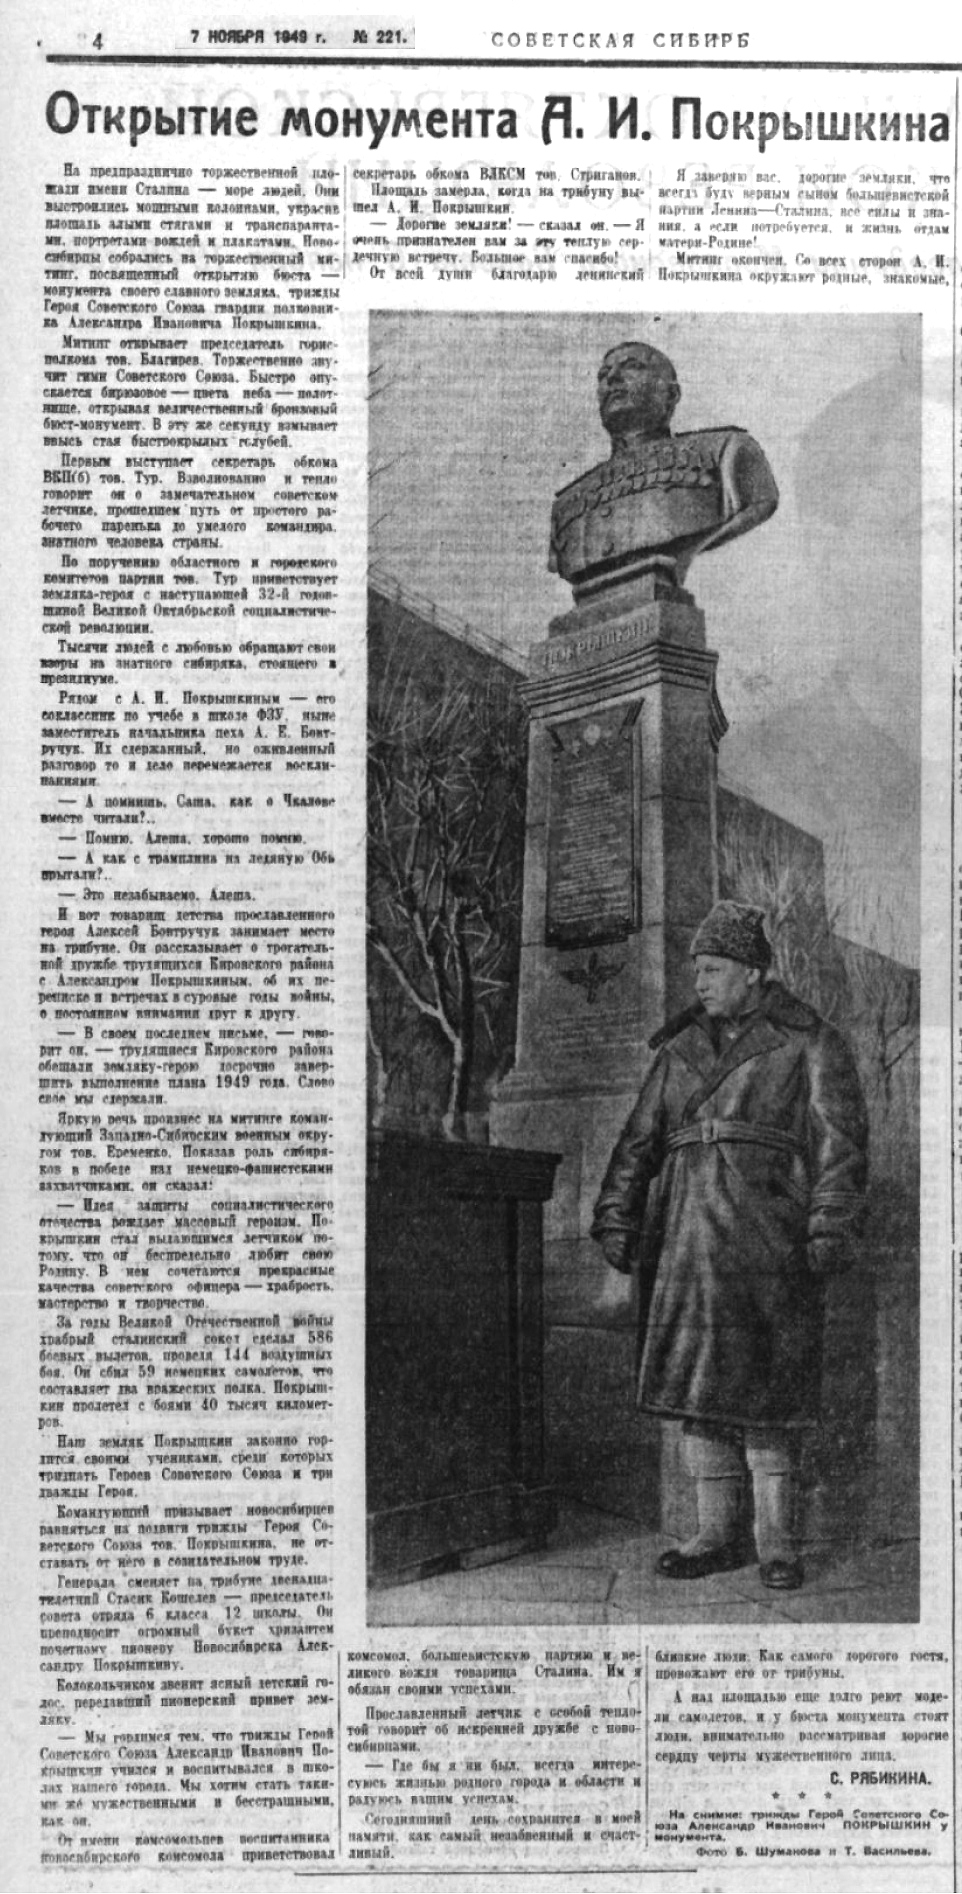 Открытие монумента Покрышкина - 7 ноября 1949